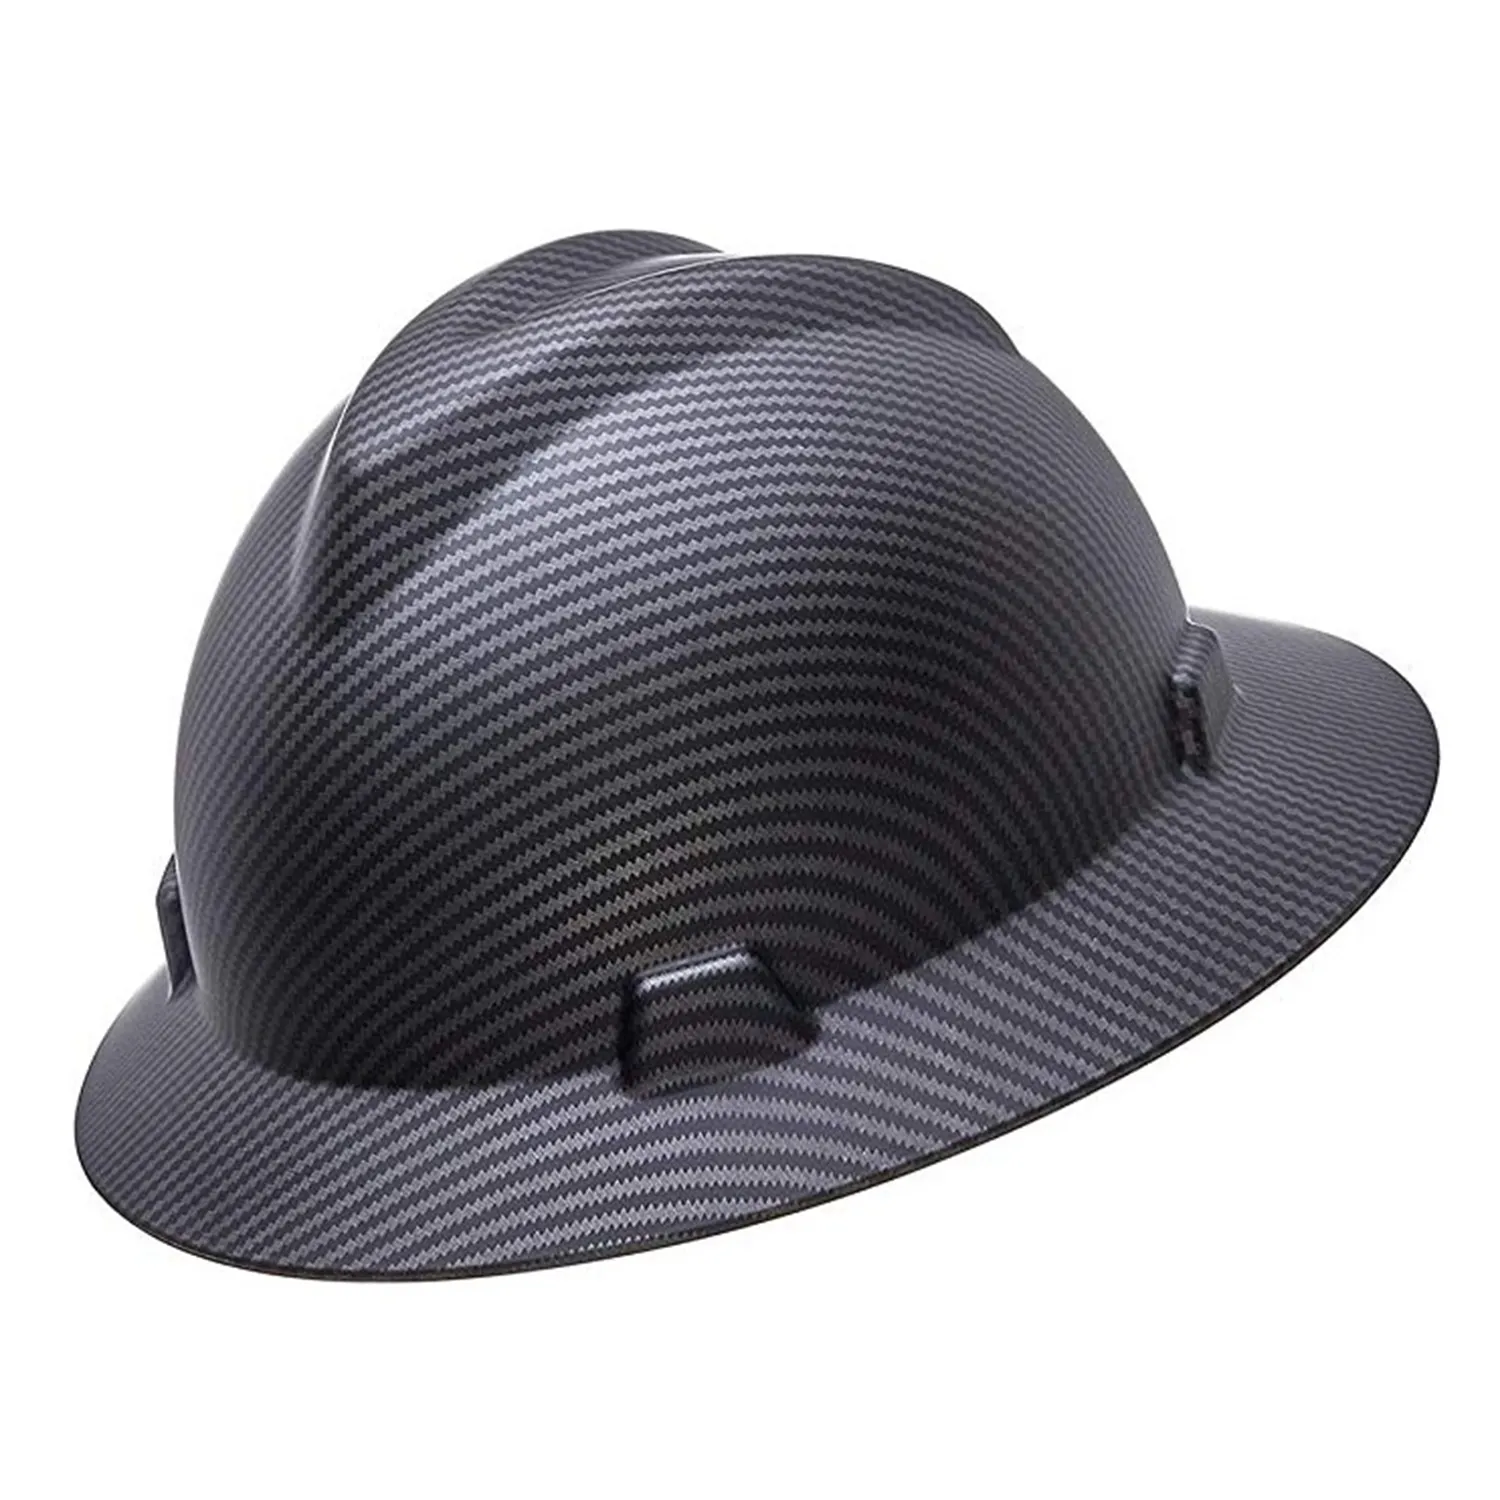 Ansi cfrp reforçado em fibra de carbono, estilos de proteção, peso leve, chapéus resistentes, capacete de segurança industrial